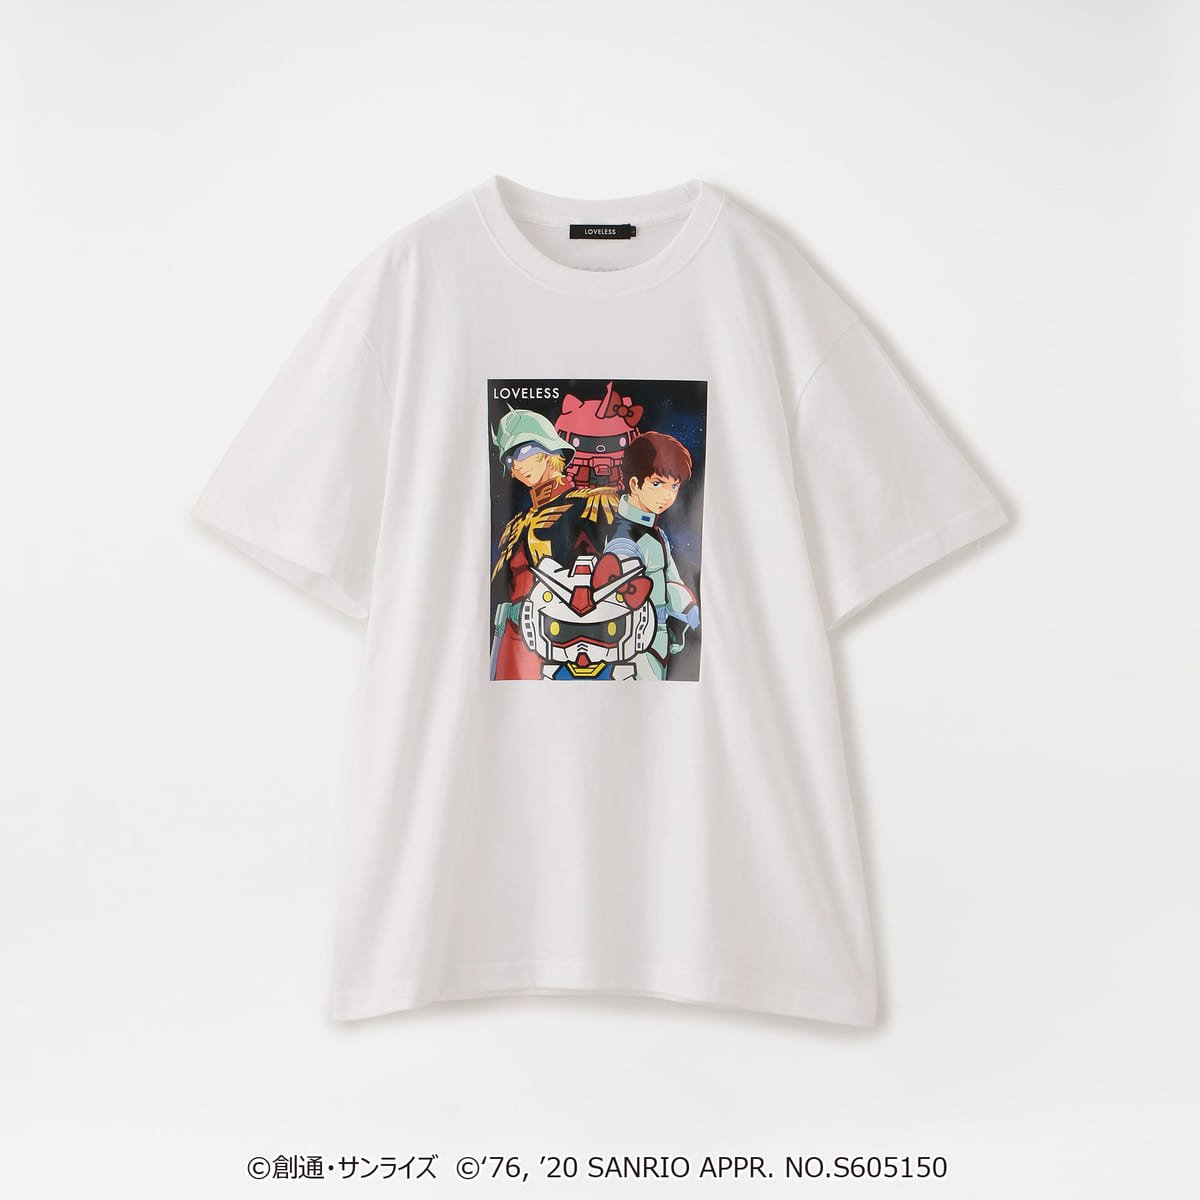 「ラブレス」×「ガンダム&ハローキティプロジェクト」 Tシャツ